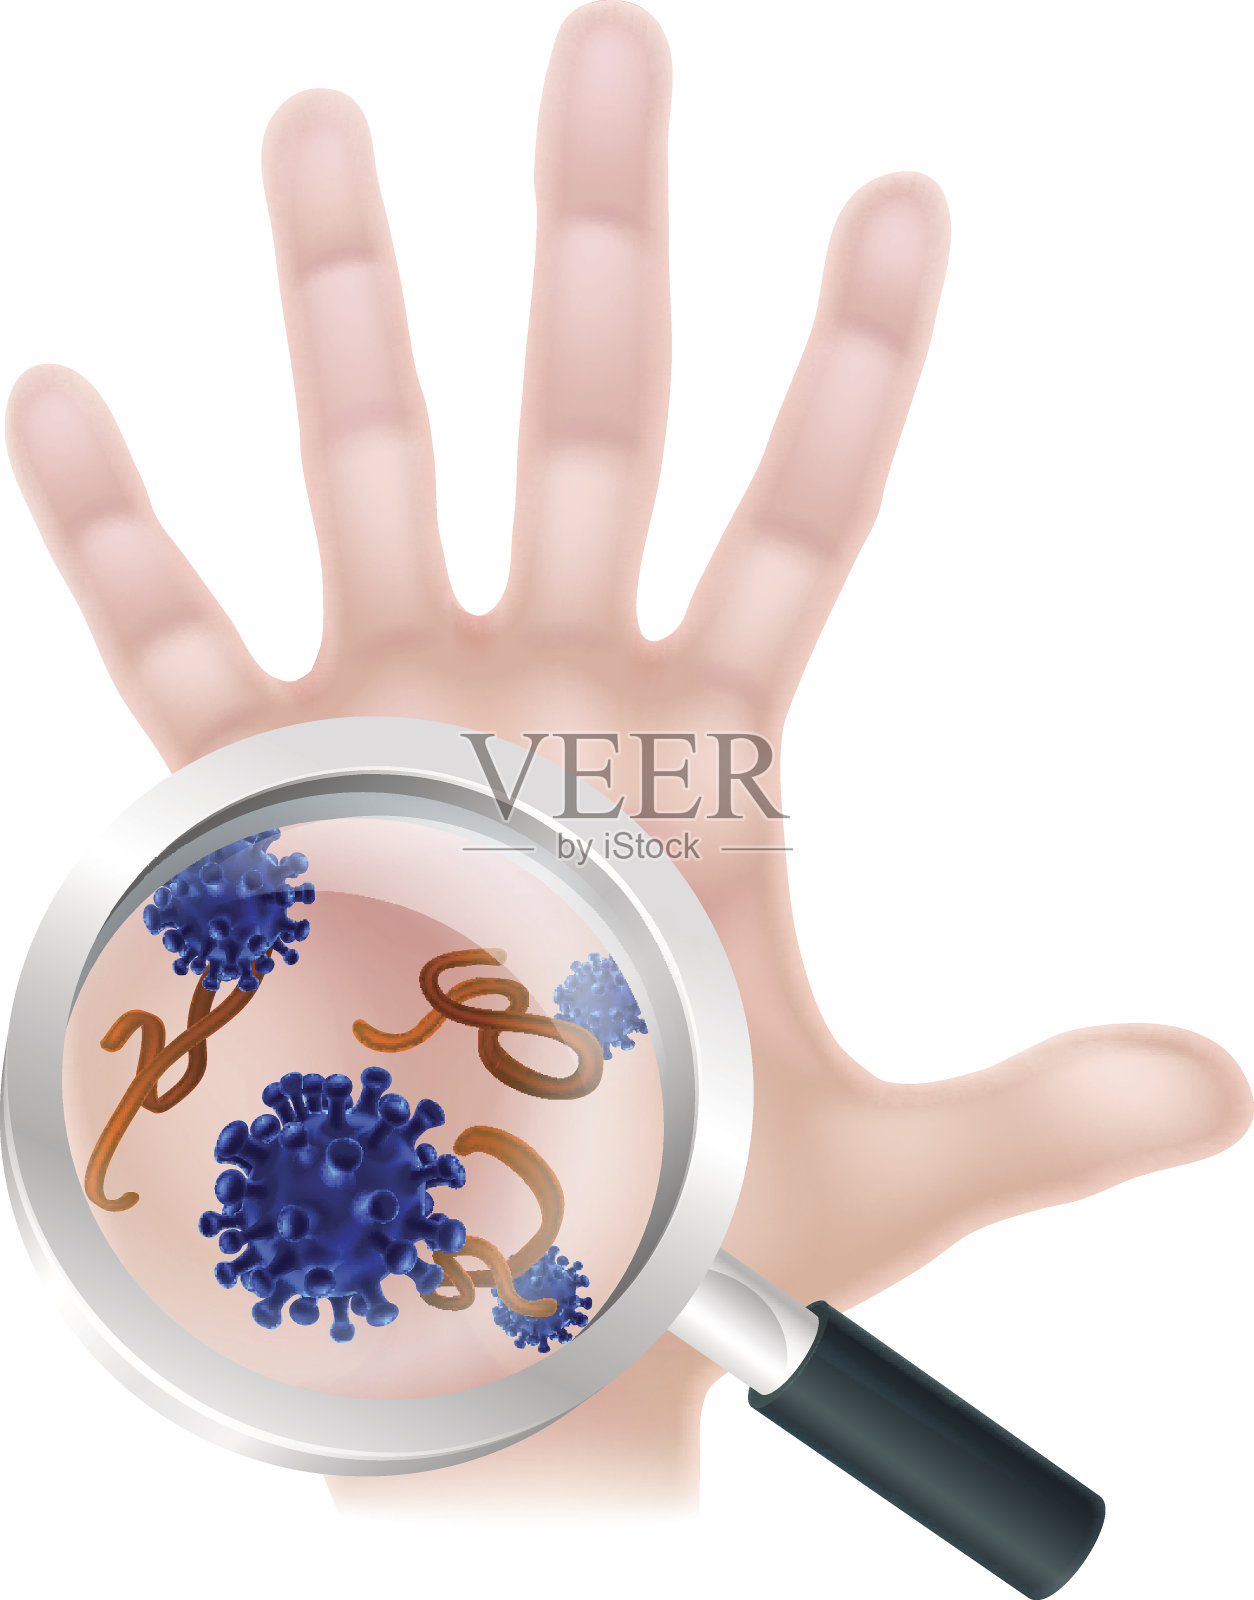 放大镜手细菌病毒概念插画图片素材